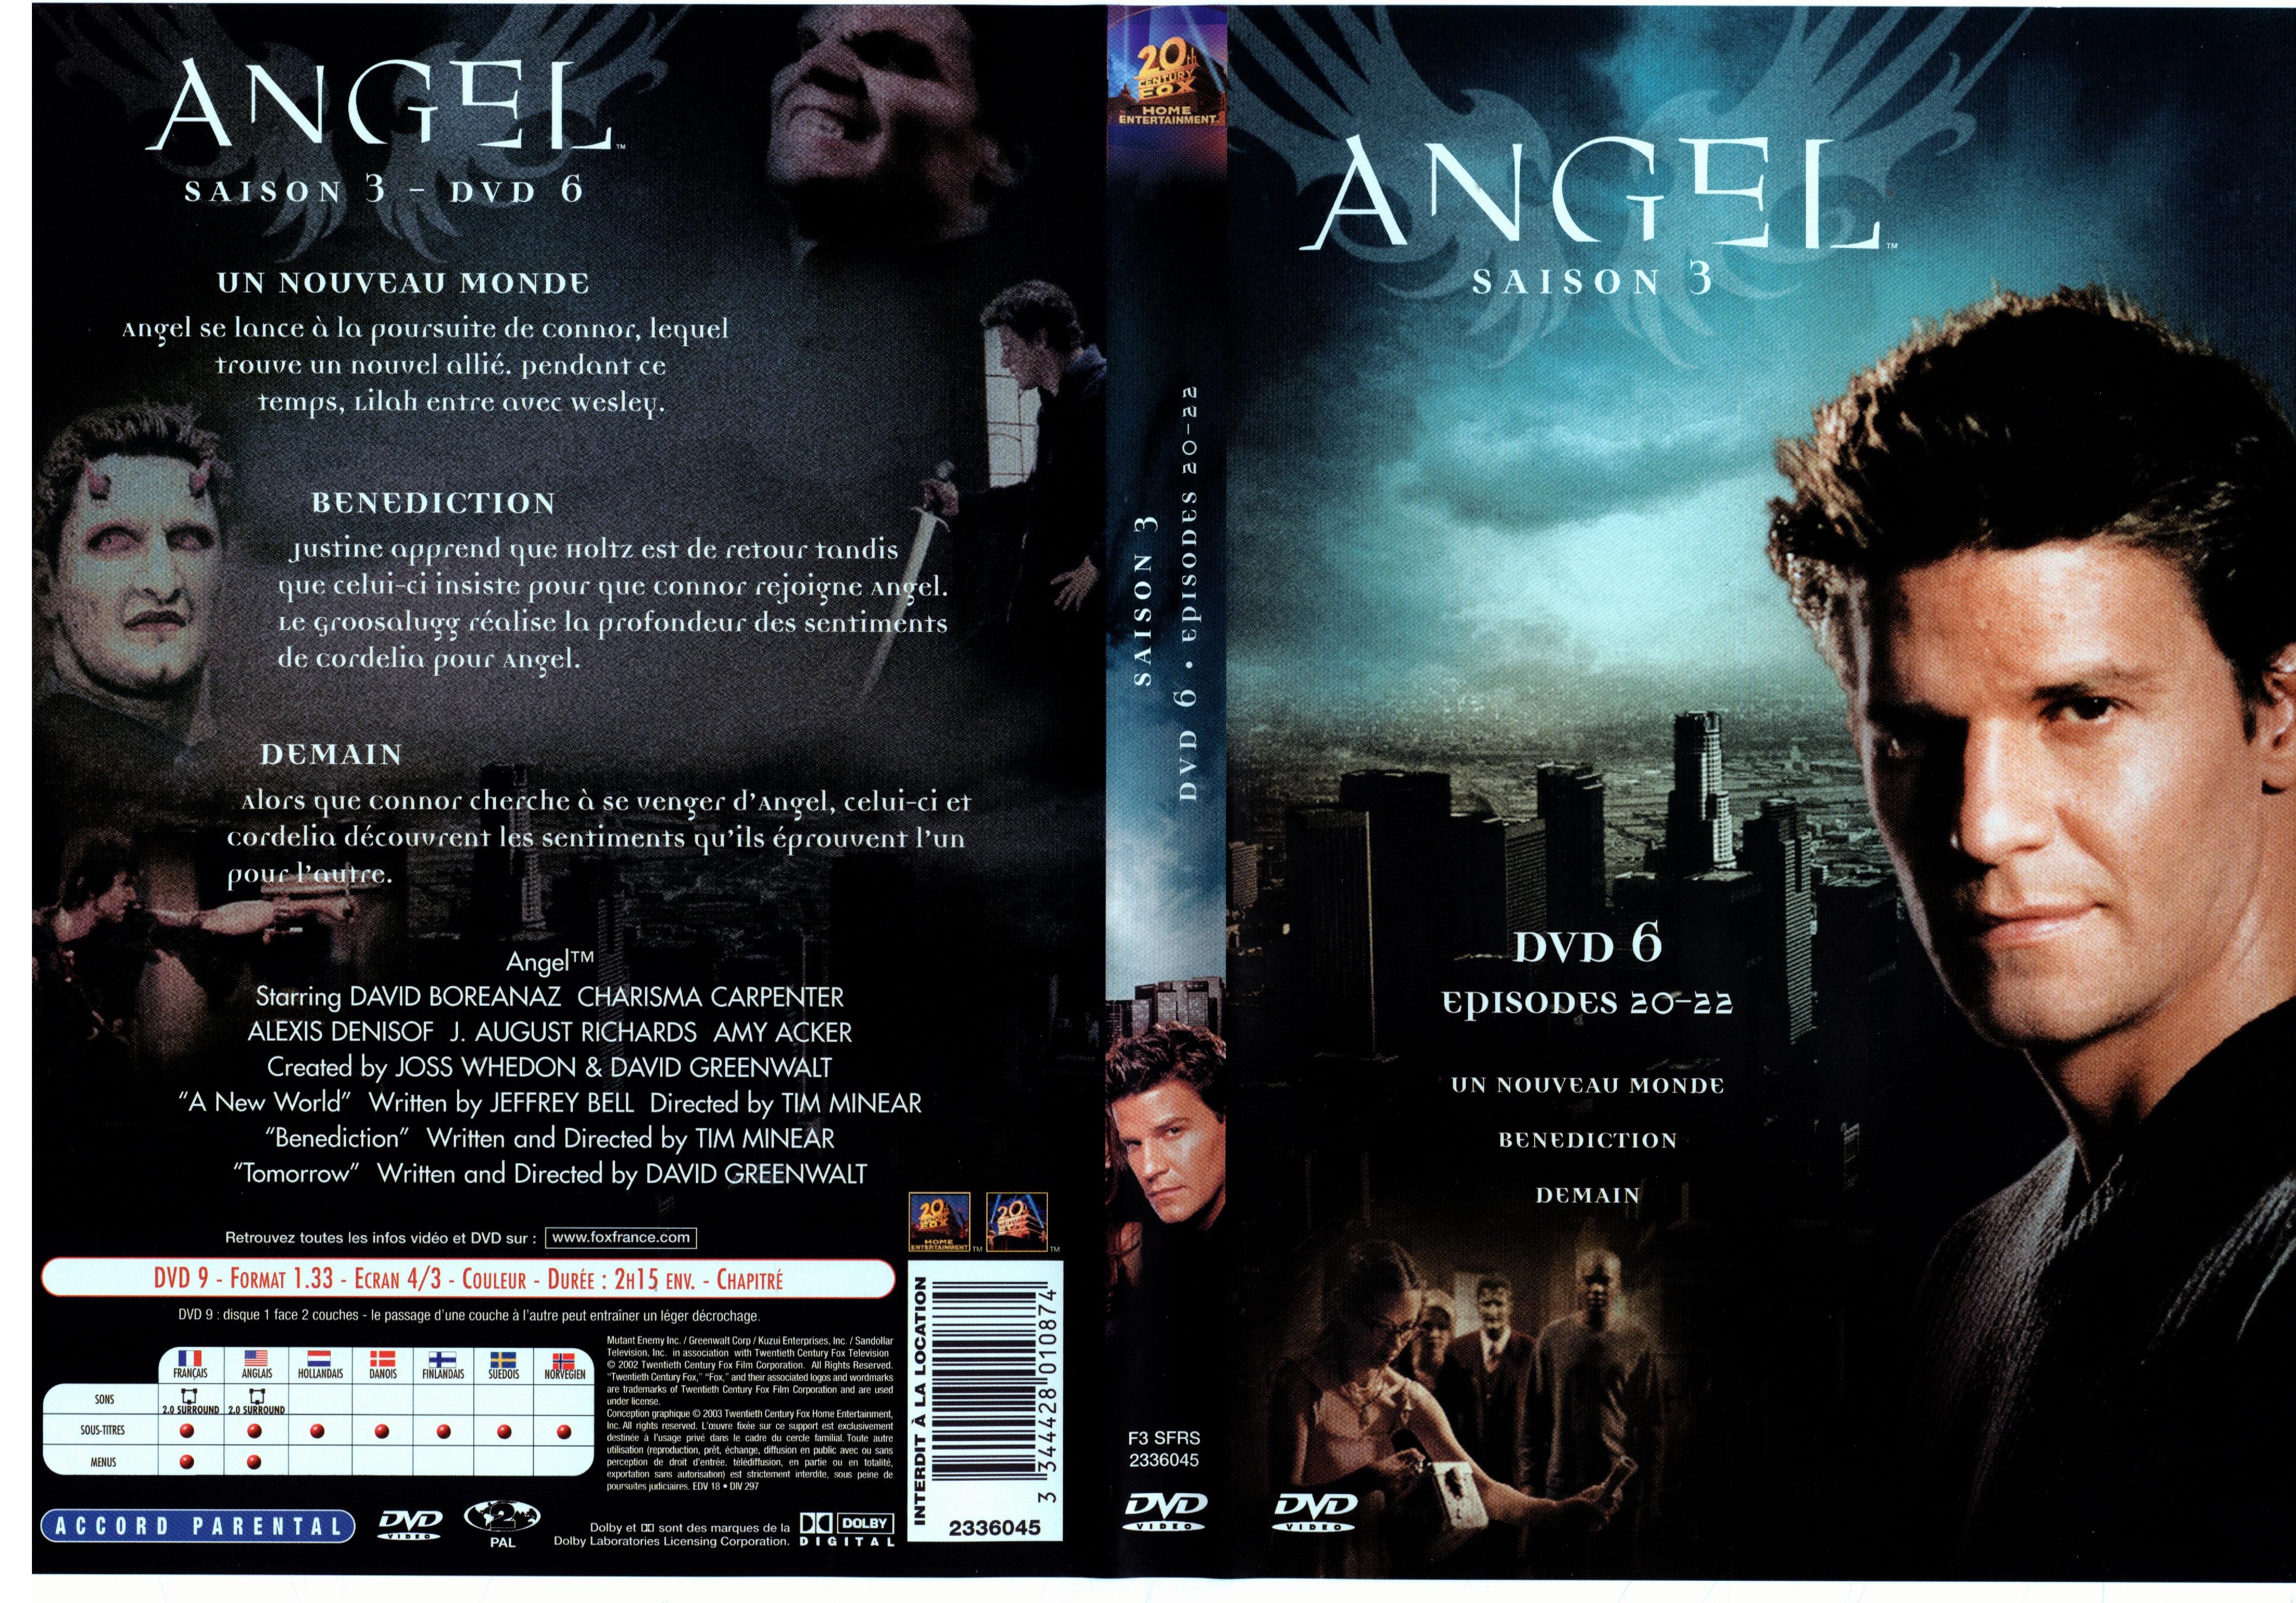 Jaquette DVD Angel Saison 3 dvd 6